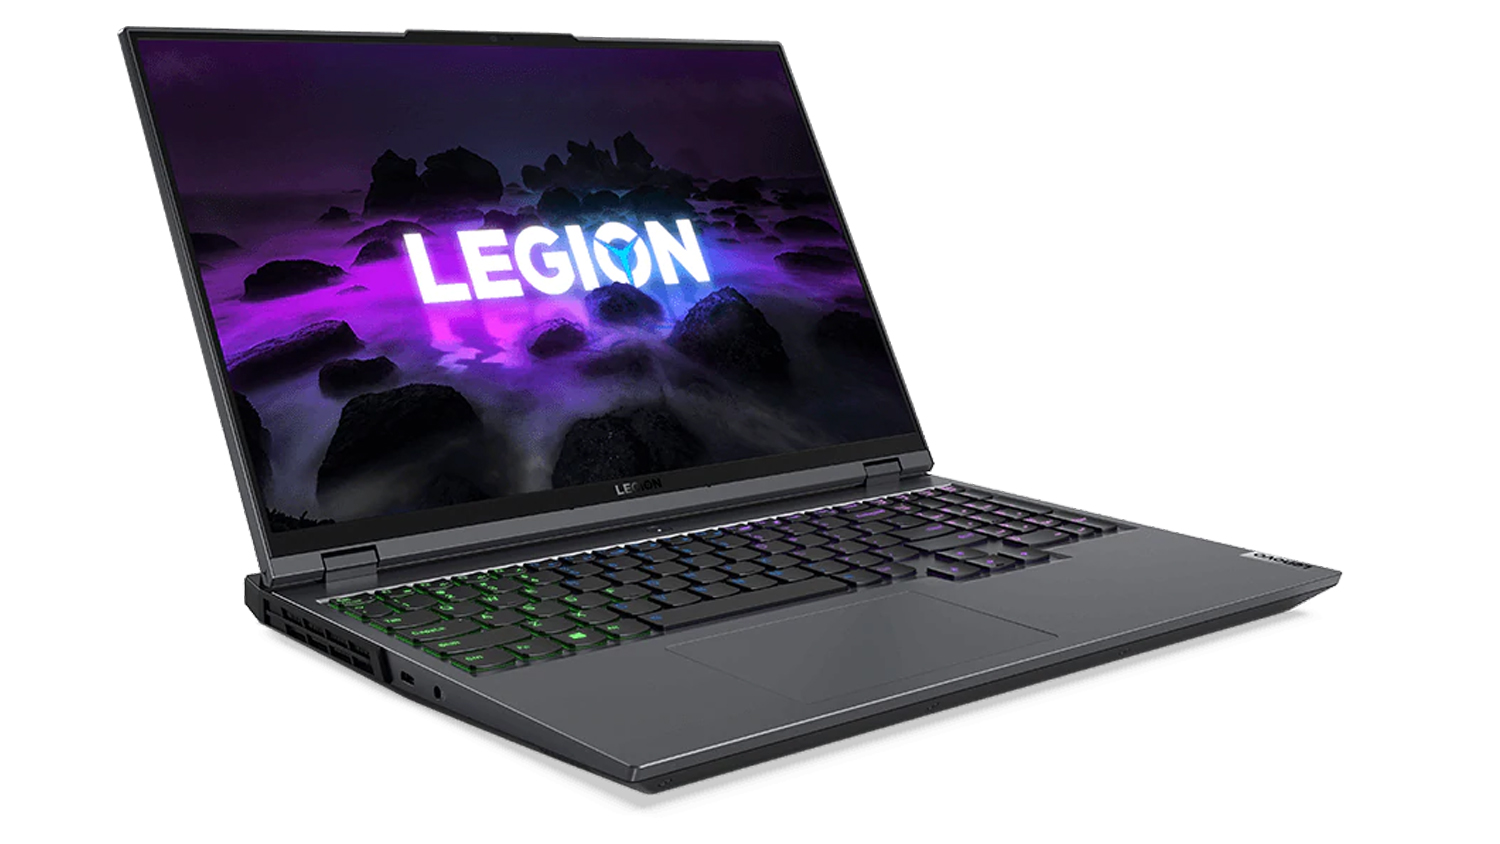 Lenovo Legion 5 Pro trên nền trắng. Máy tính xách tay đang mở và có một nền đầy màu sắc trên màn hình với logo Legion và những gì trông giống như những tảng đá đen bao quanh nó.